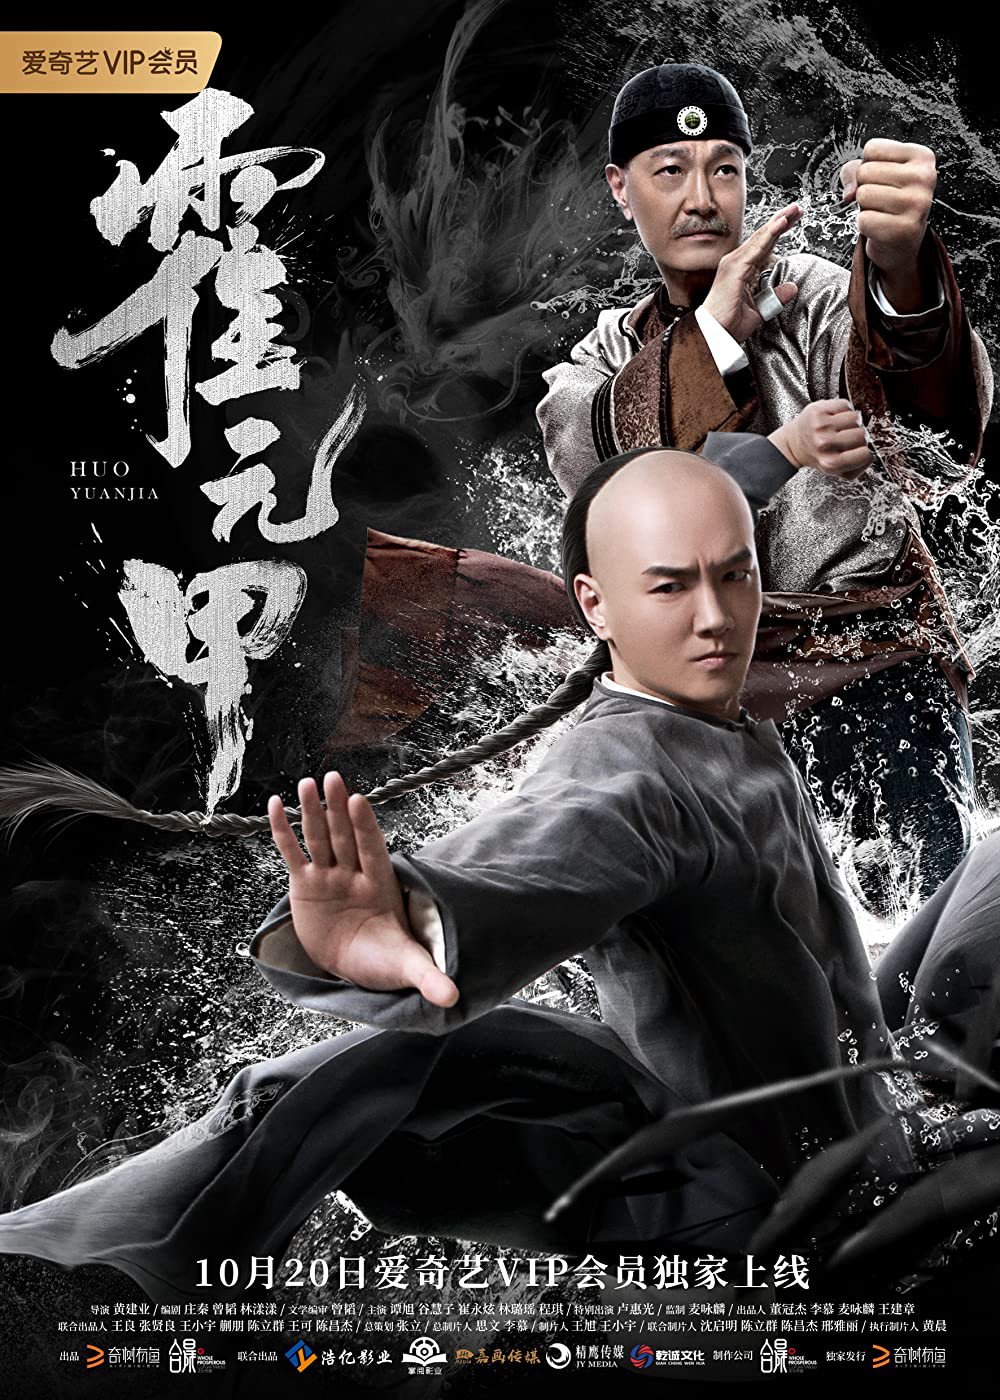 Poster Phim Hoắc Nguyên Giáp (Huo Yuanjia)